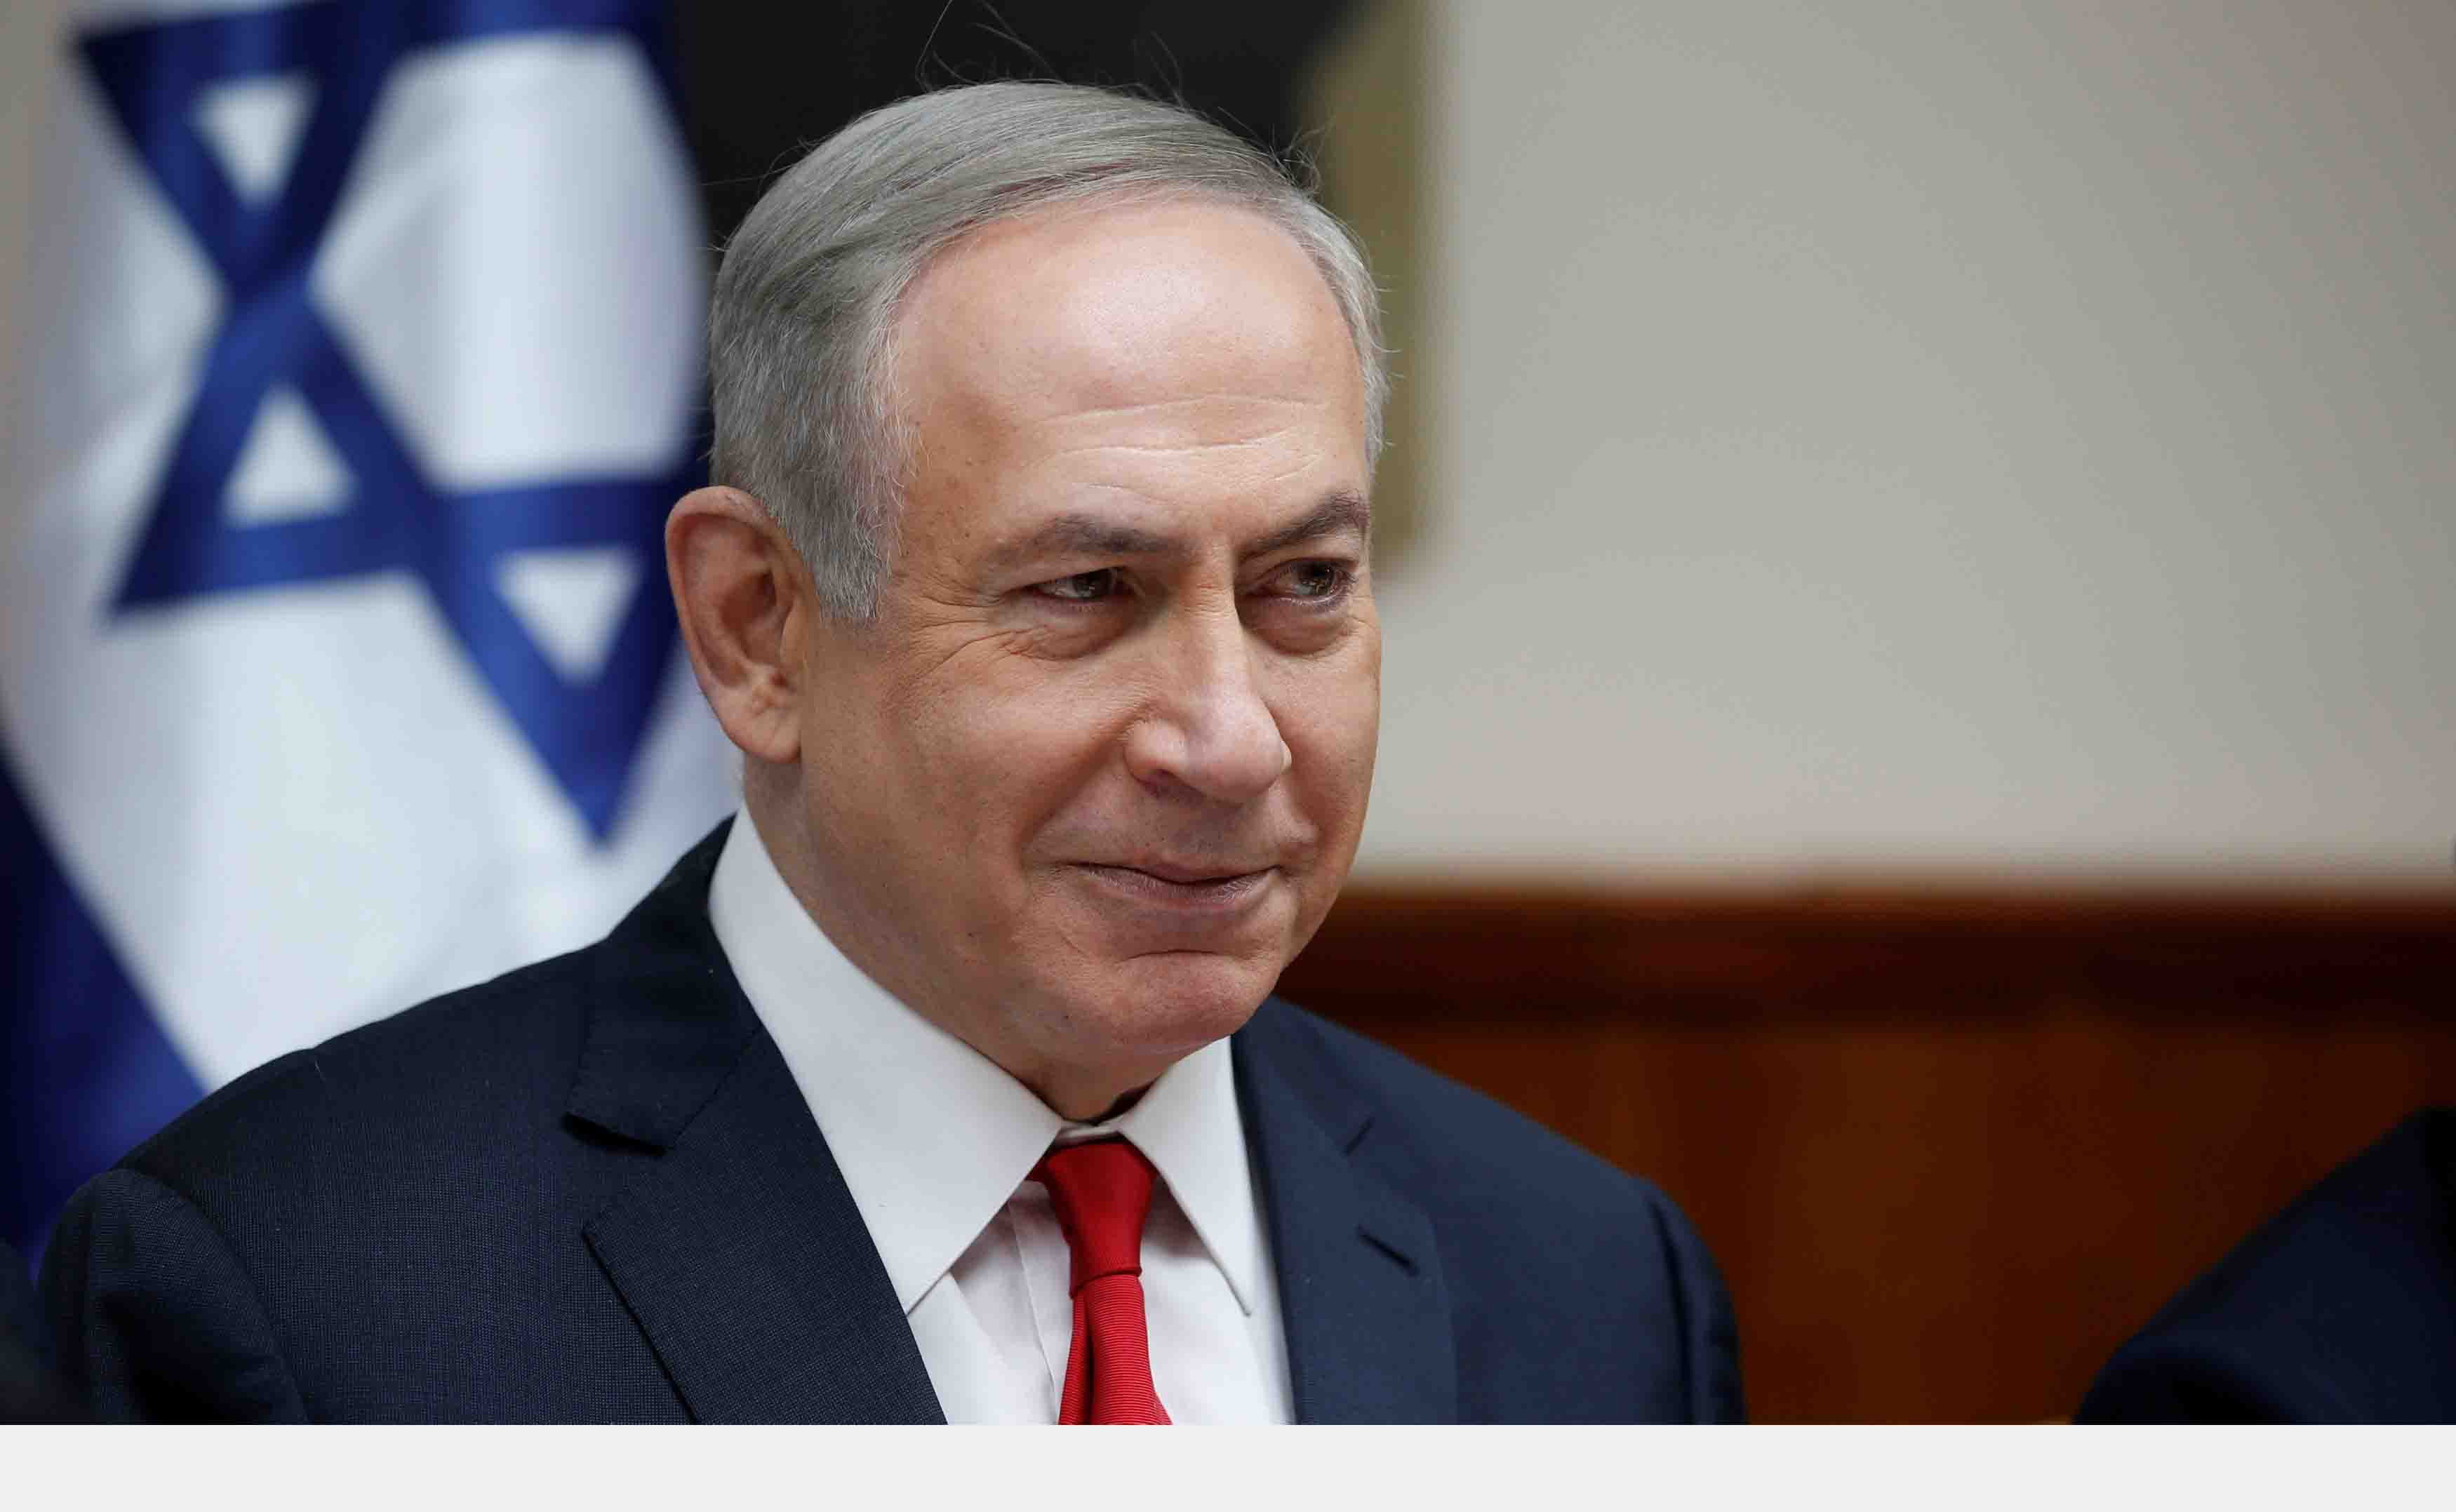 El primer ministro israelí envió un mensaje de paz a la comunidad iraní con la intensión de promover un futuro pacífico